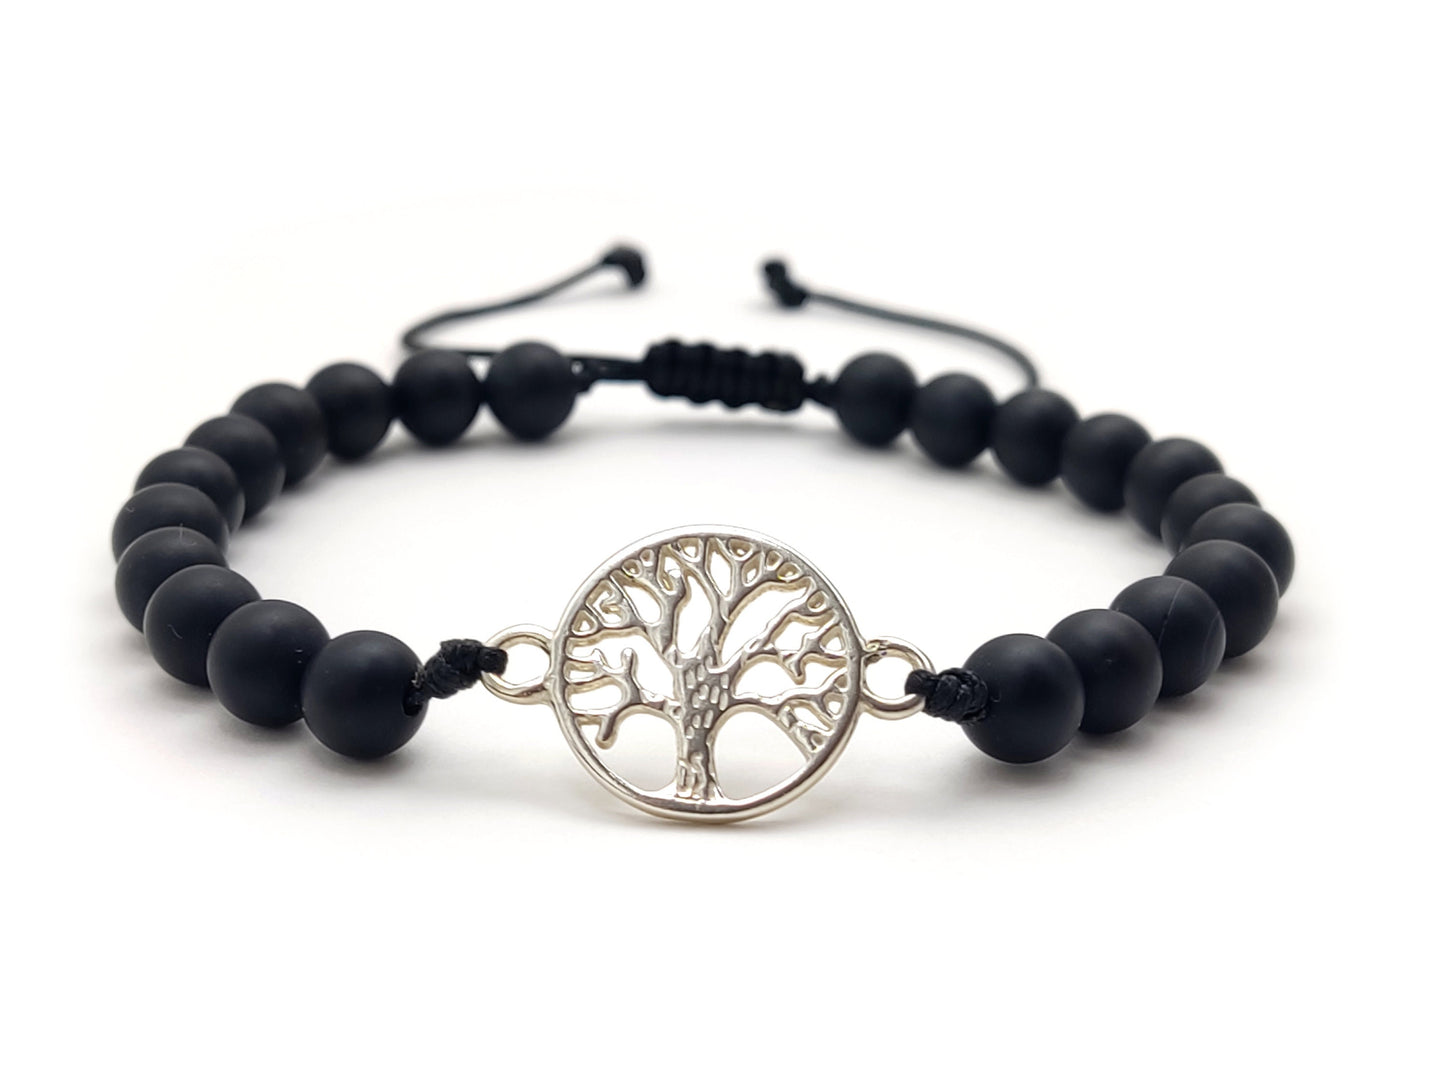 Bracelet en argent grec, bijoux Onyx, bracelet arbre de vie fait avec des pierres noires Onyx mat 6mm, brassard Griechischer Silber, Bijoux Grece